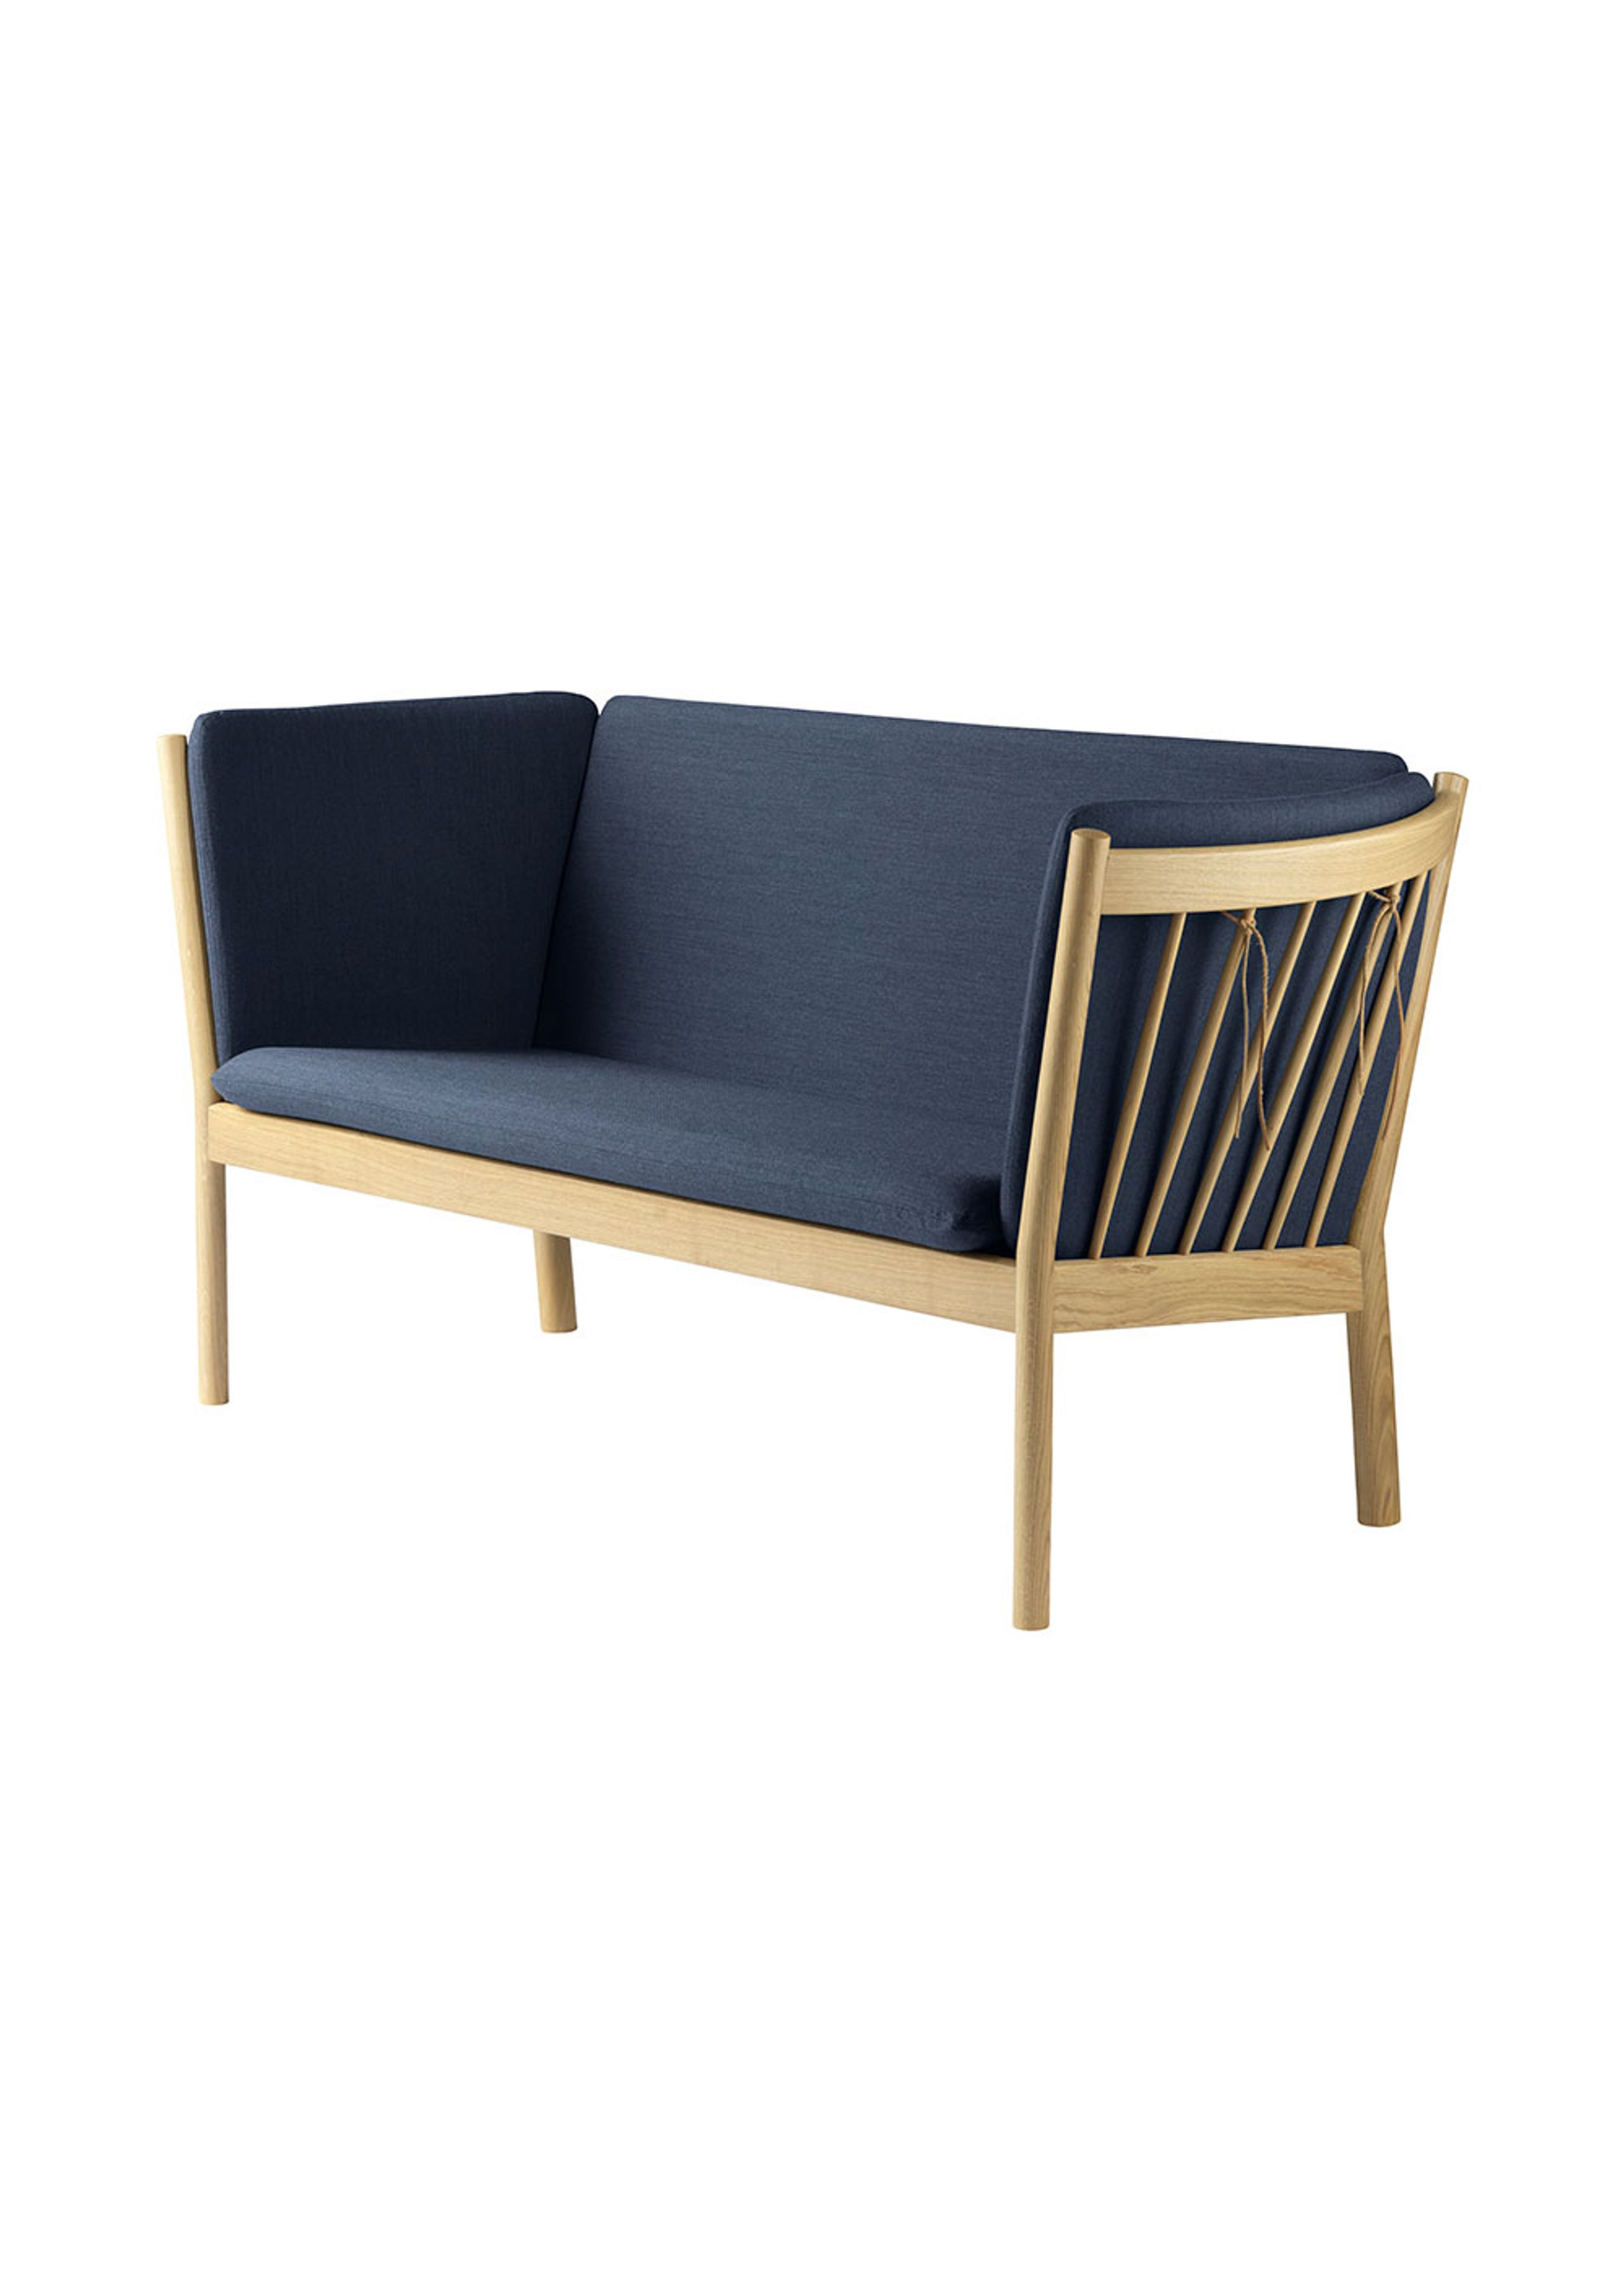 FDB Møbler / Furniture - Sofa - J148 2 pers by Erik Ole Jørgensen - Eg, Natur, Lakeret / Uld, Mørkeblå